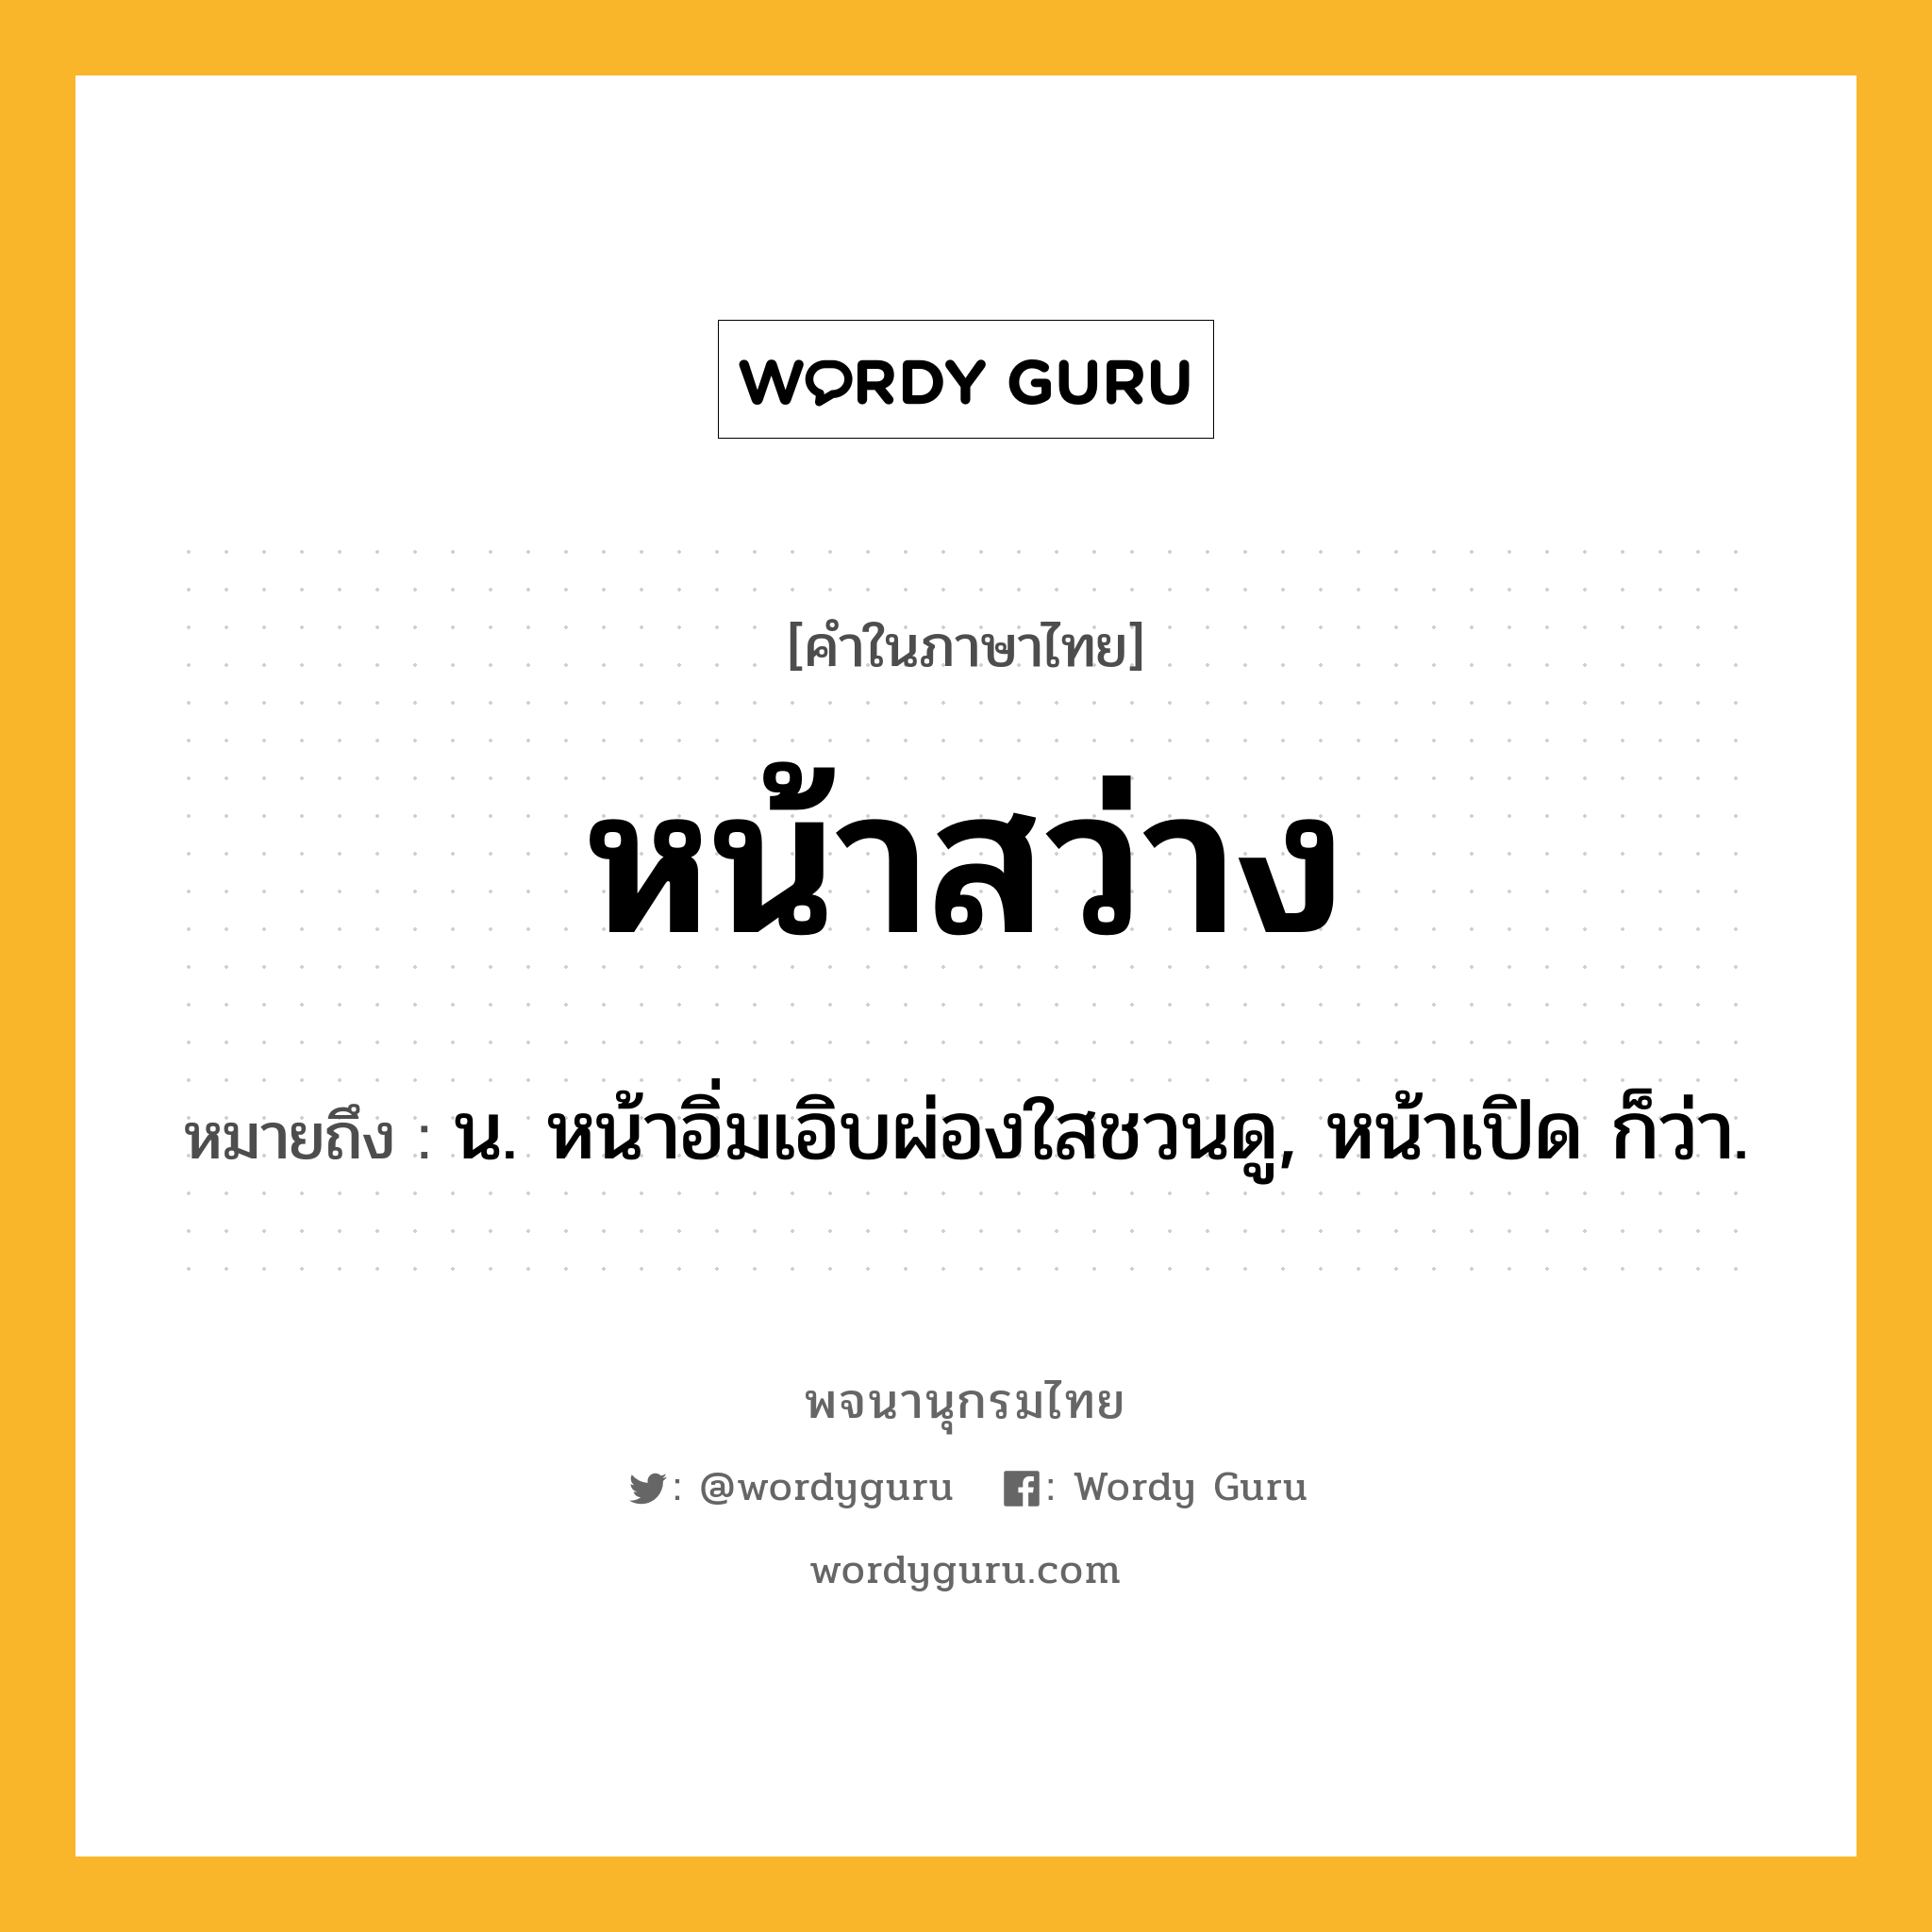 หน้าสว่าง หมายถึงอะไร?, คำในภาษาไทย หน้าสว่าง หมายถึง น. หน้าอิ่มเอิบผ่องใสชวนดู, หน้าเปิด ก็ว่า.